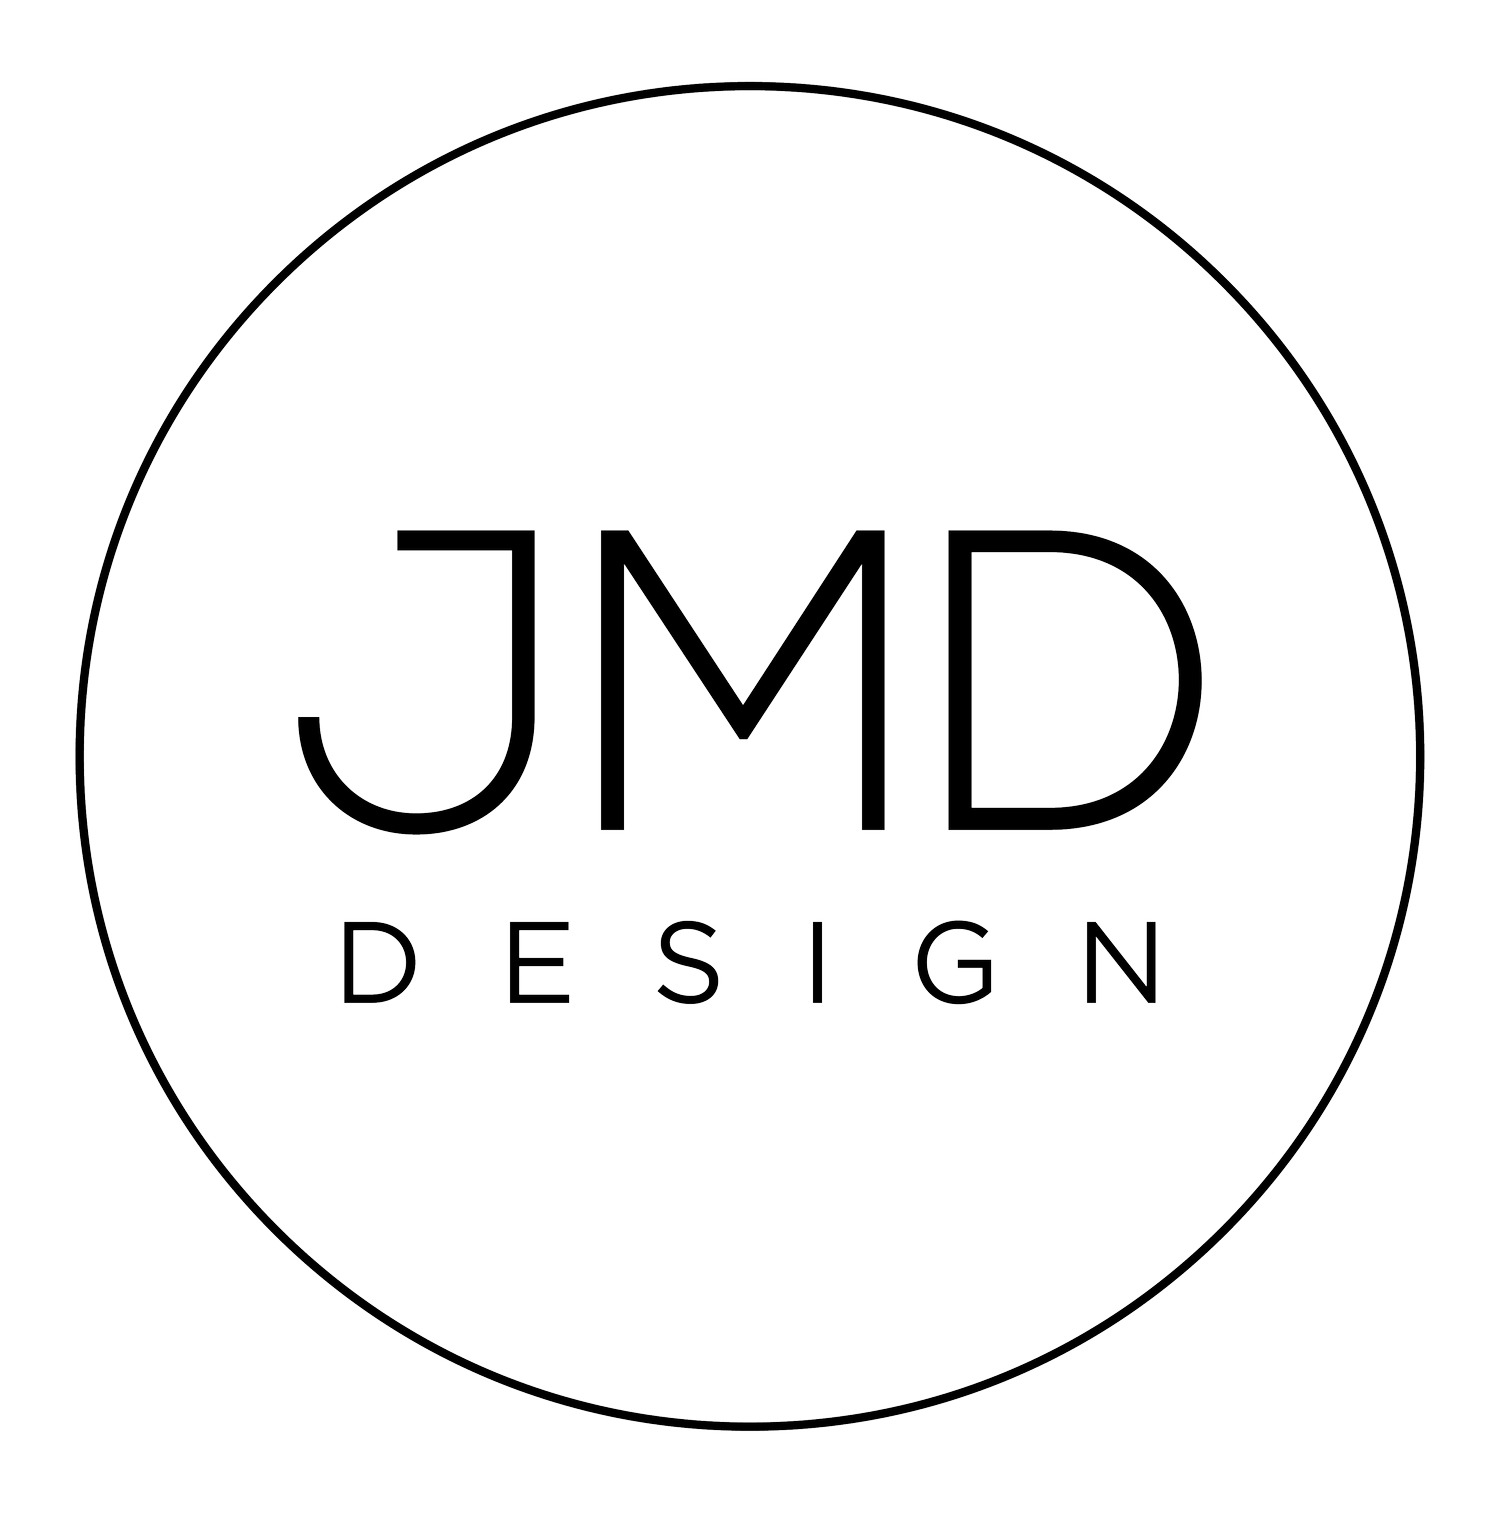 JMD Design